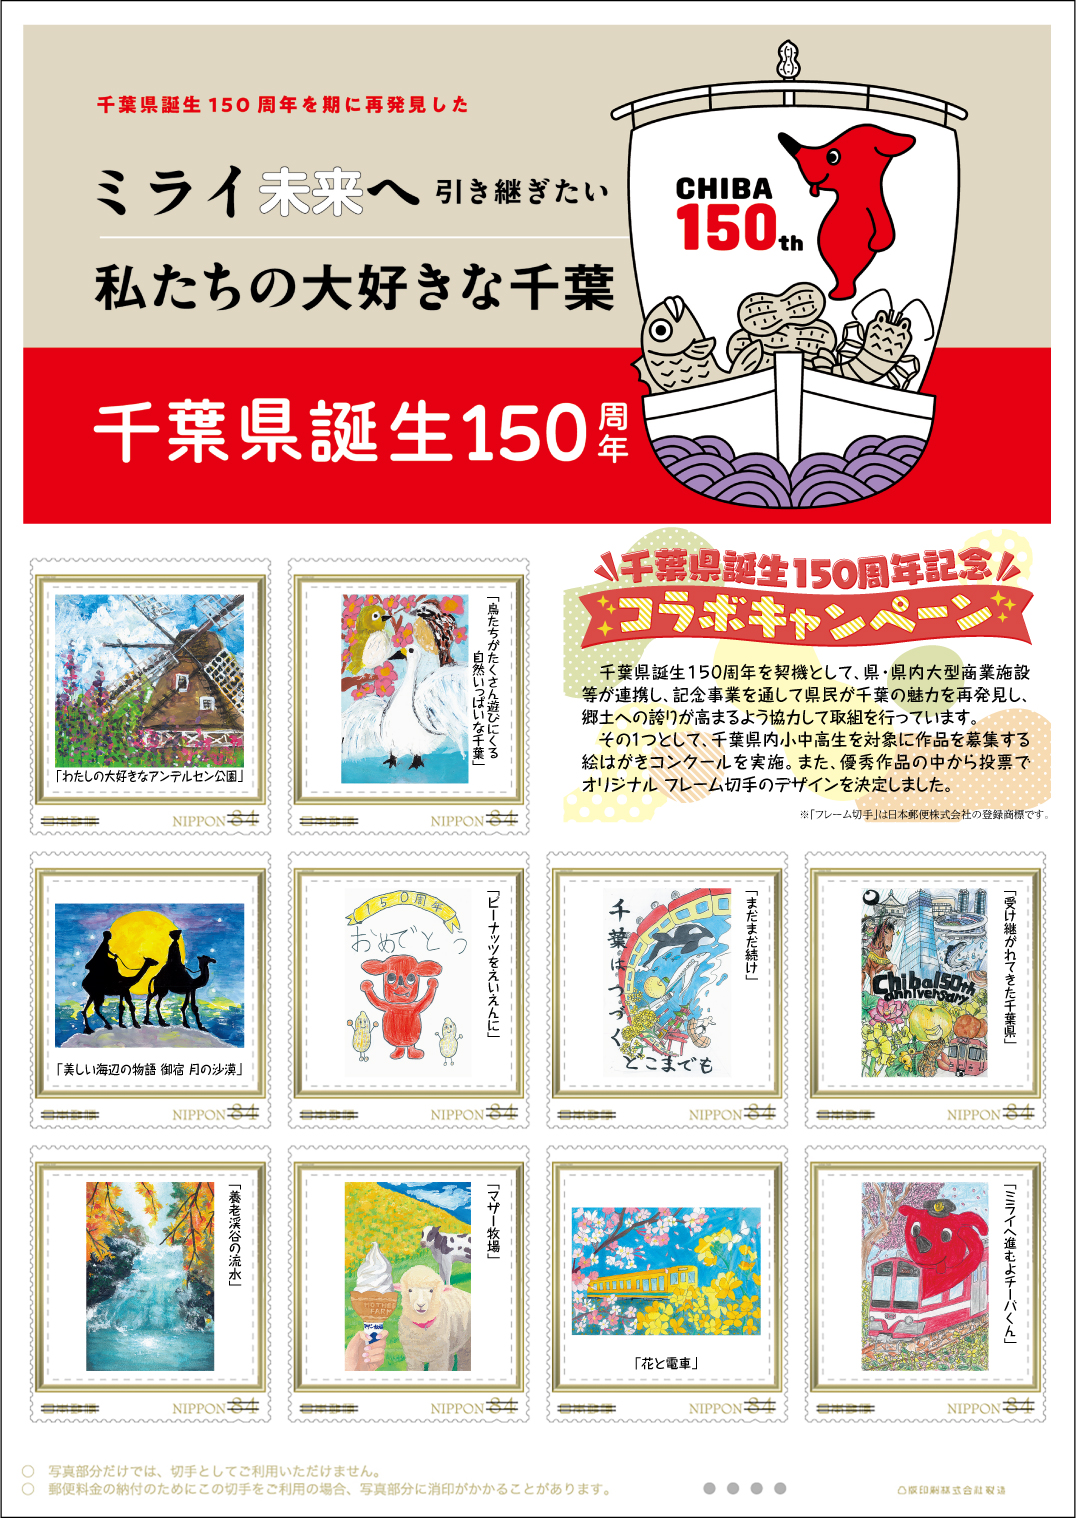 オリジナル フレーム切手『「千葉県誕生150周年記念　私たちの大好きな千葉」オリジナル フレーム切手』の販売開始と贈呈式の開催